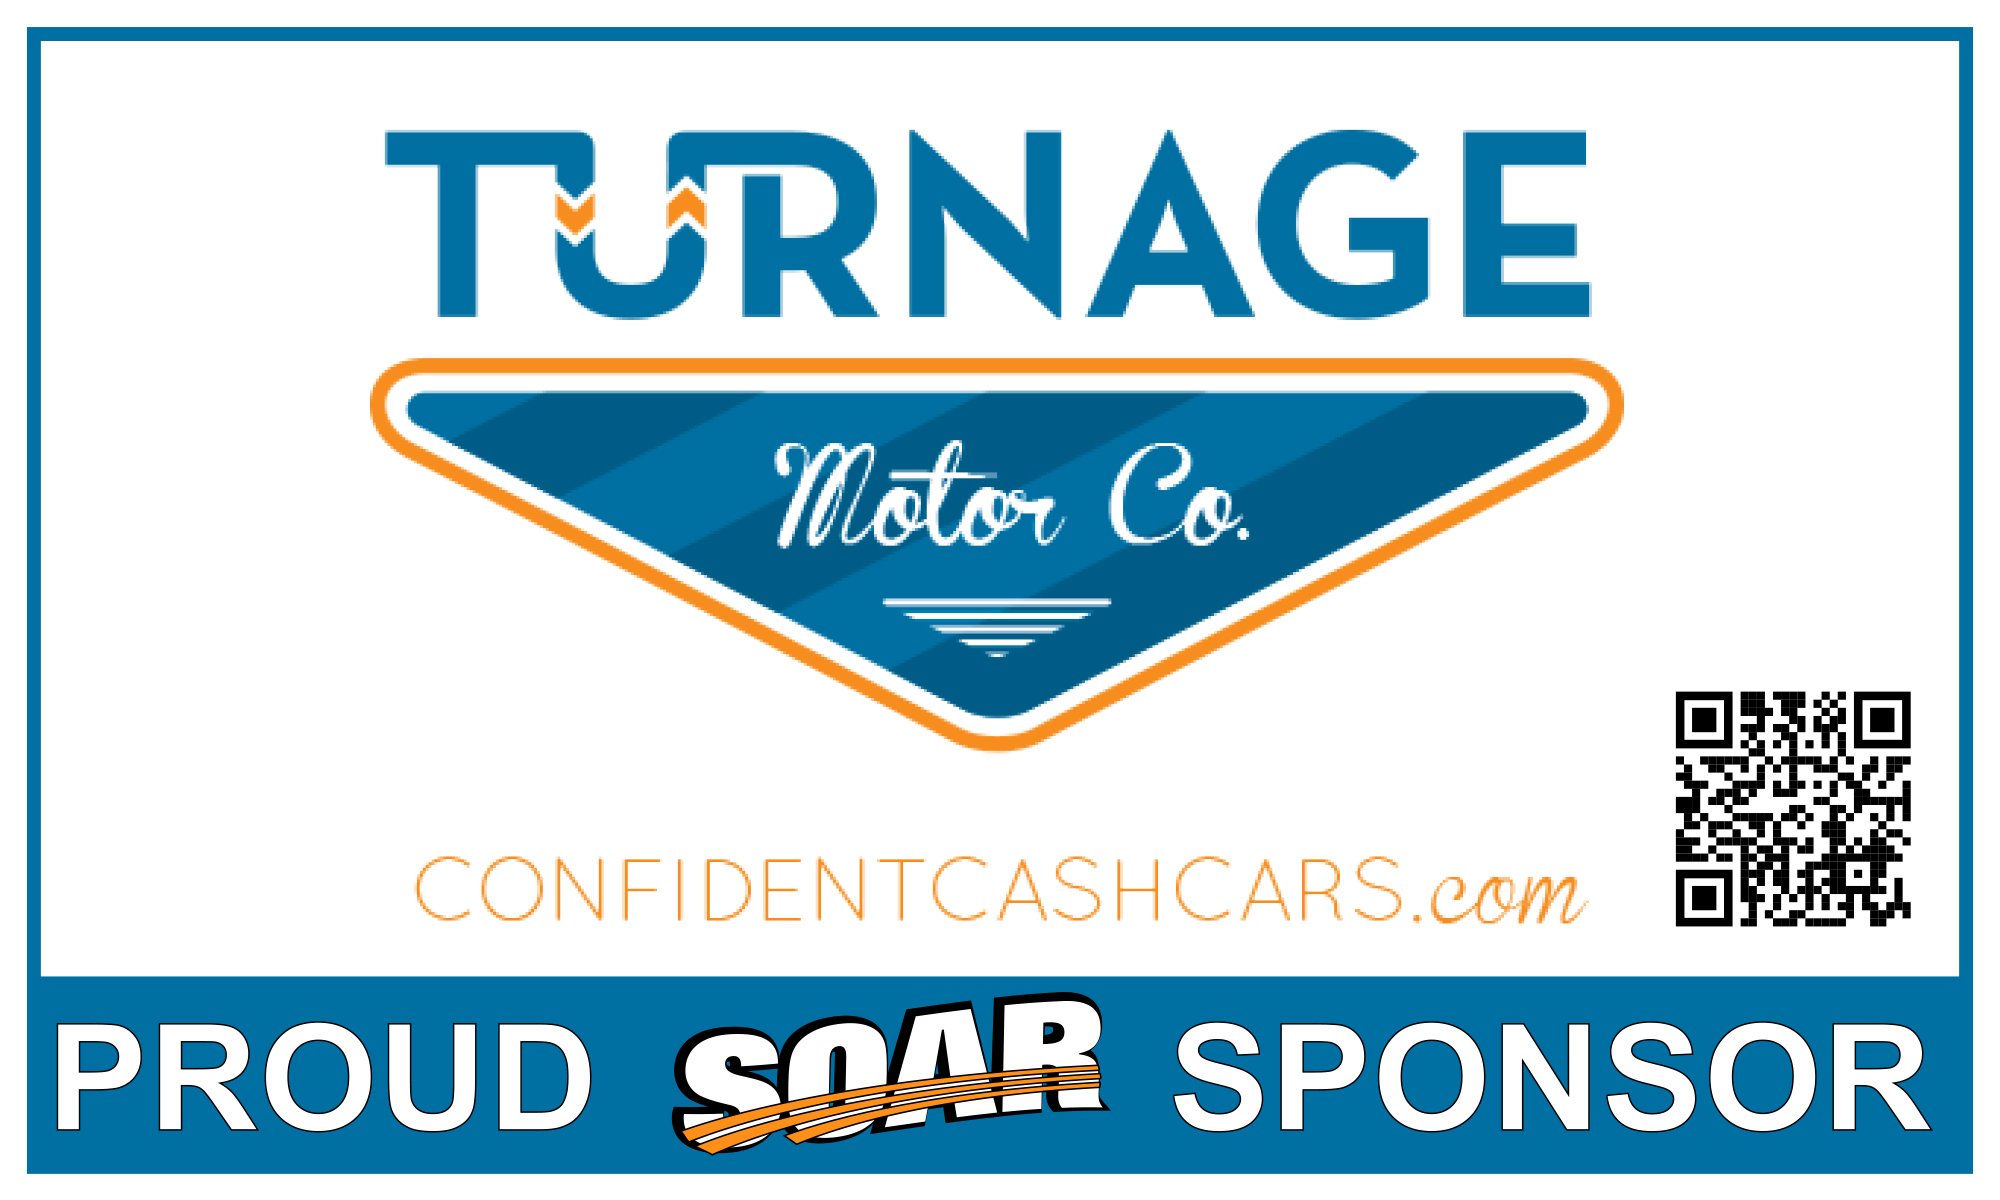 Turnage Moter Sponsor Banners Co.jpg